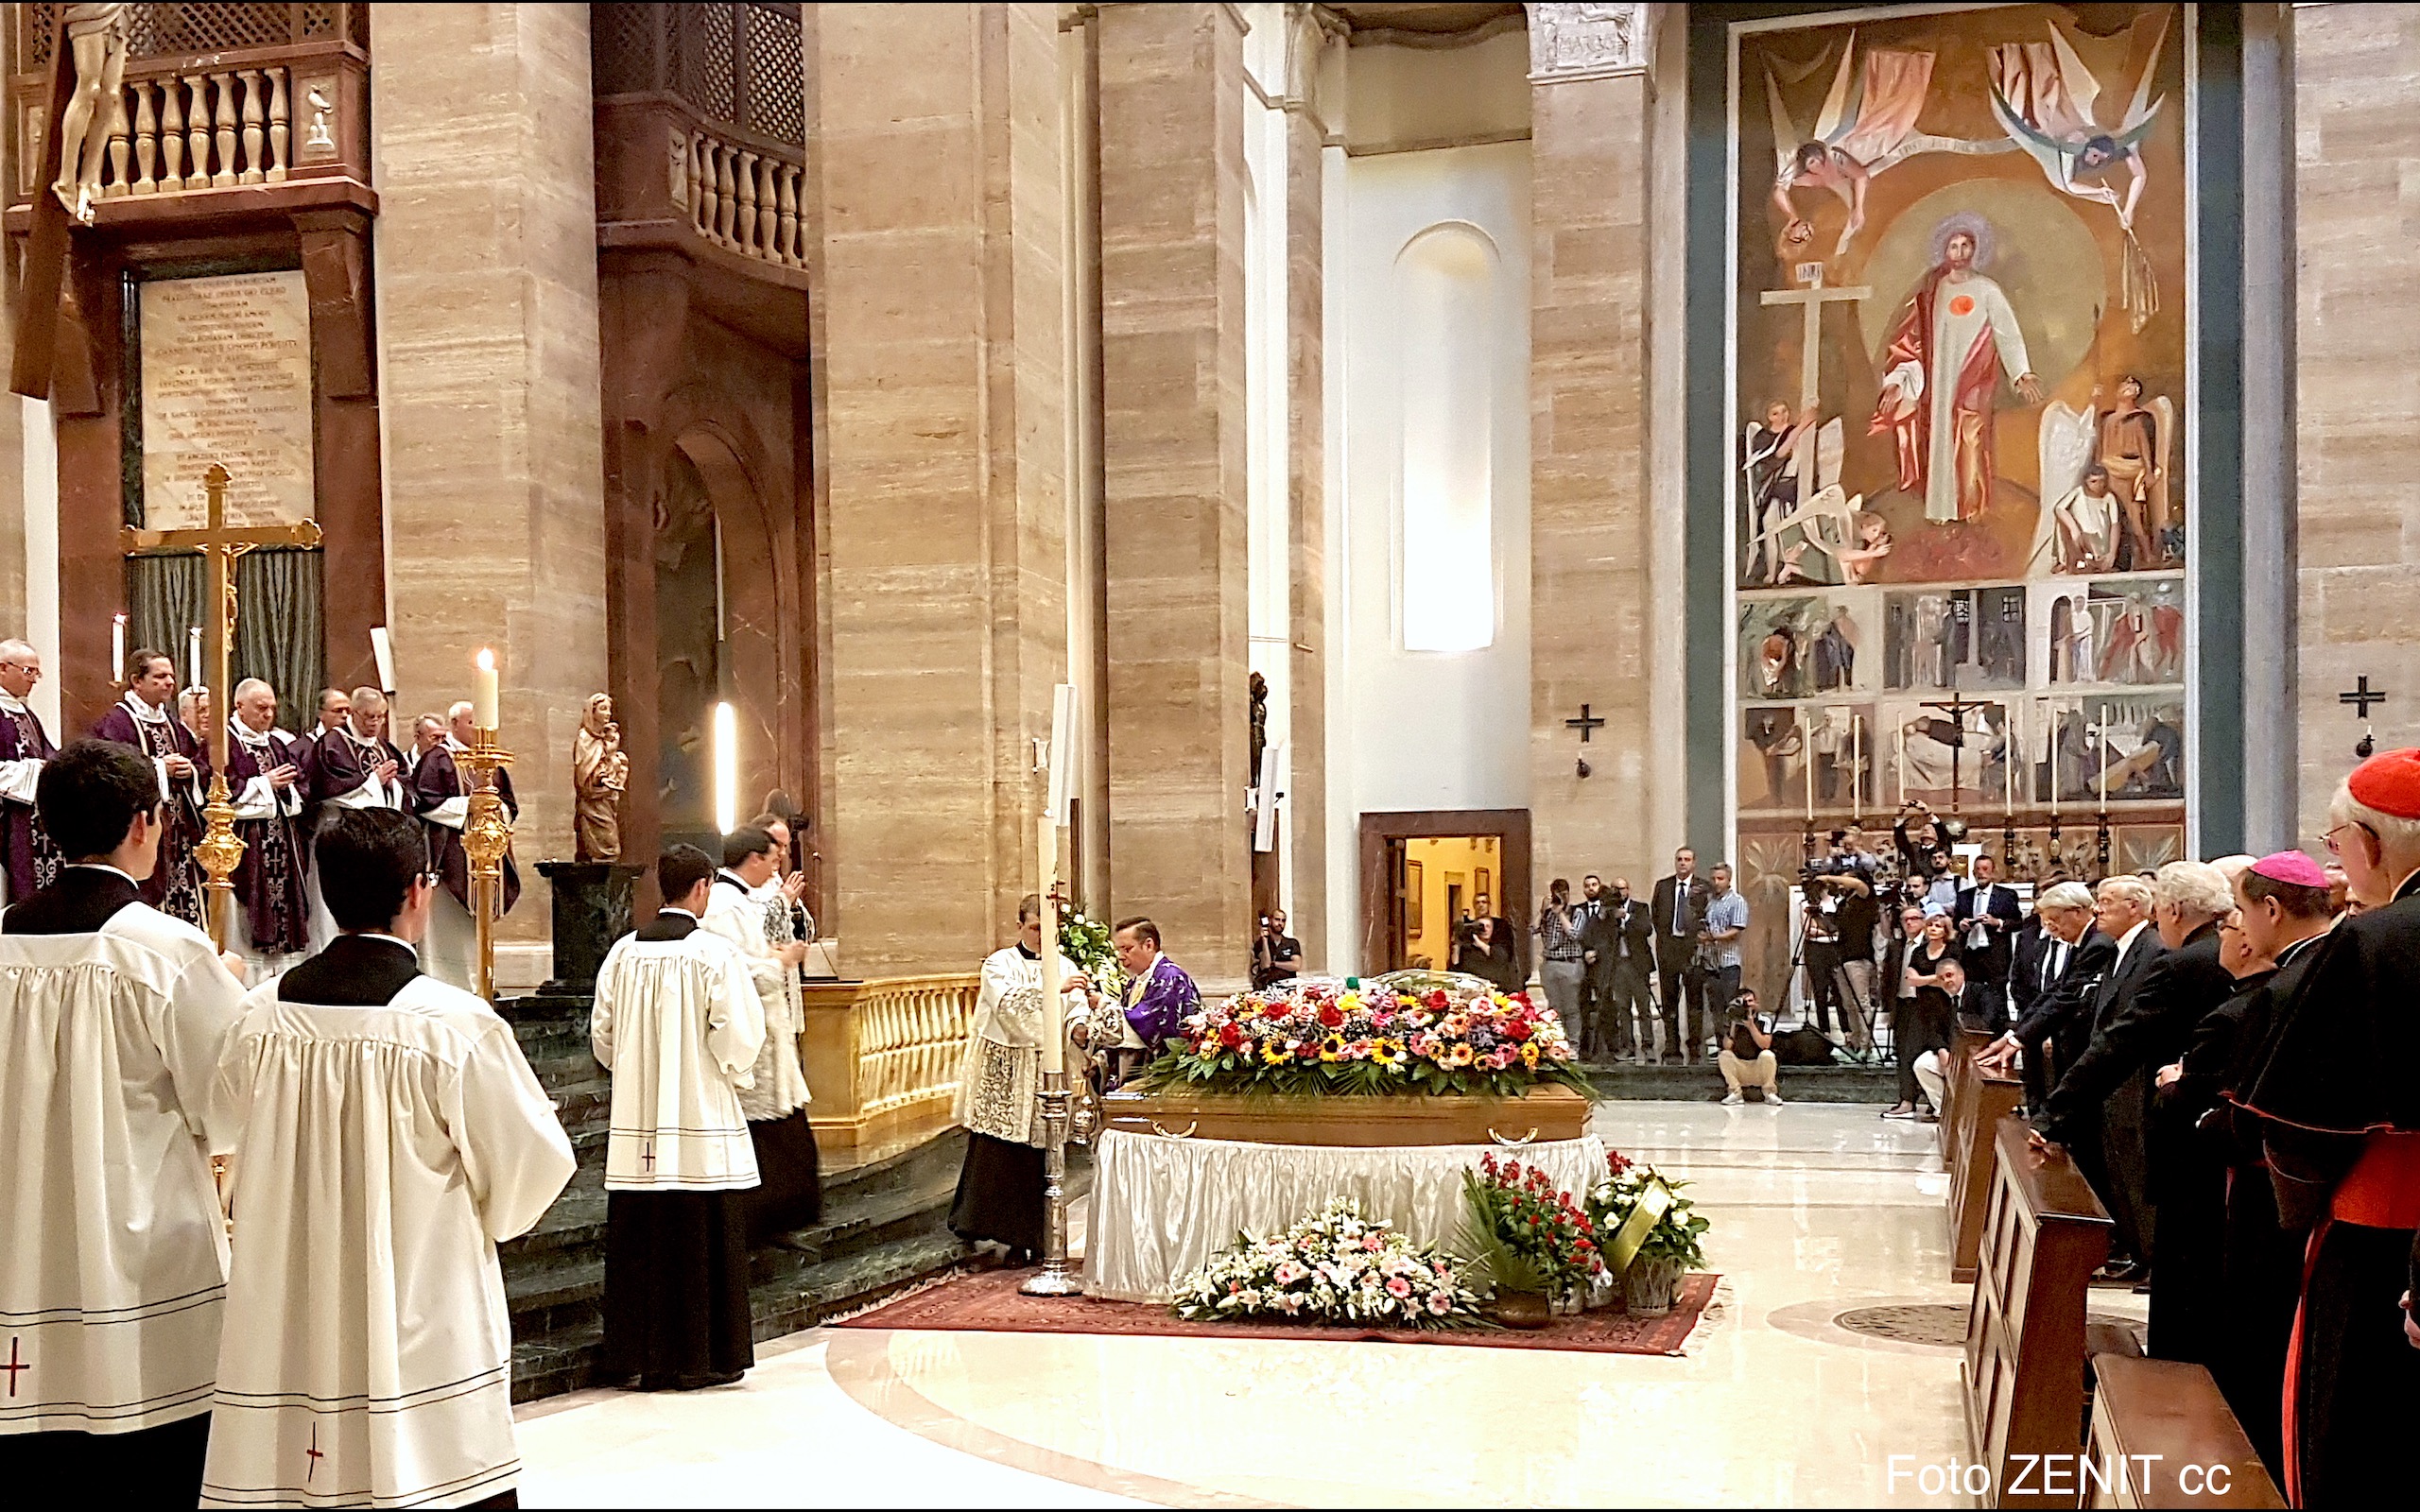 Funeral del director emerito de la Oficina de prensa del Vaticano, Joaquin Navarro Valls - Foto Agencia ZENIT cc